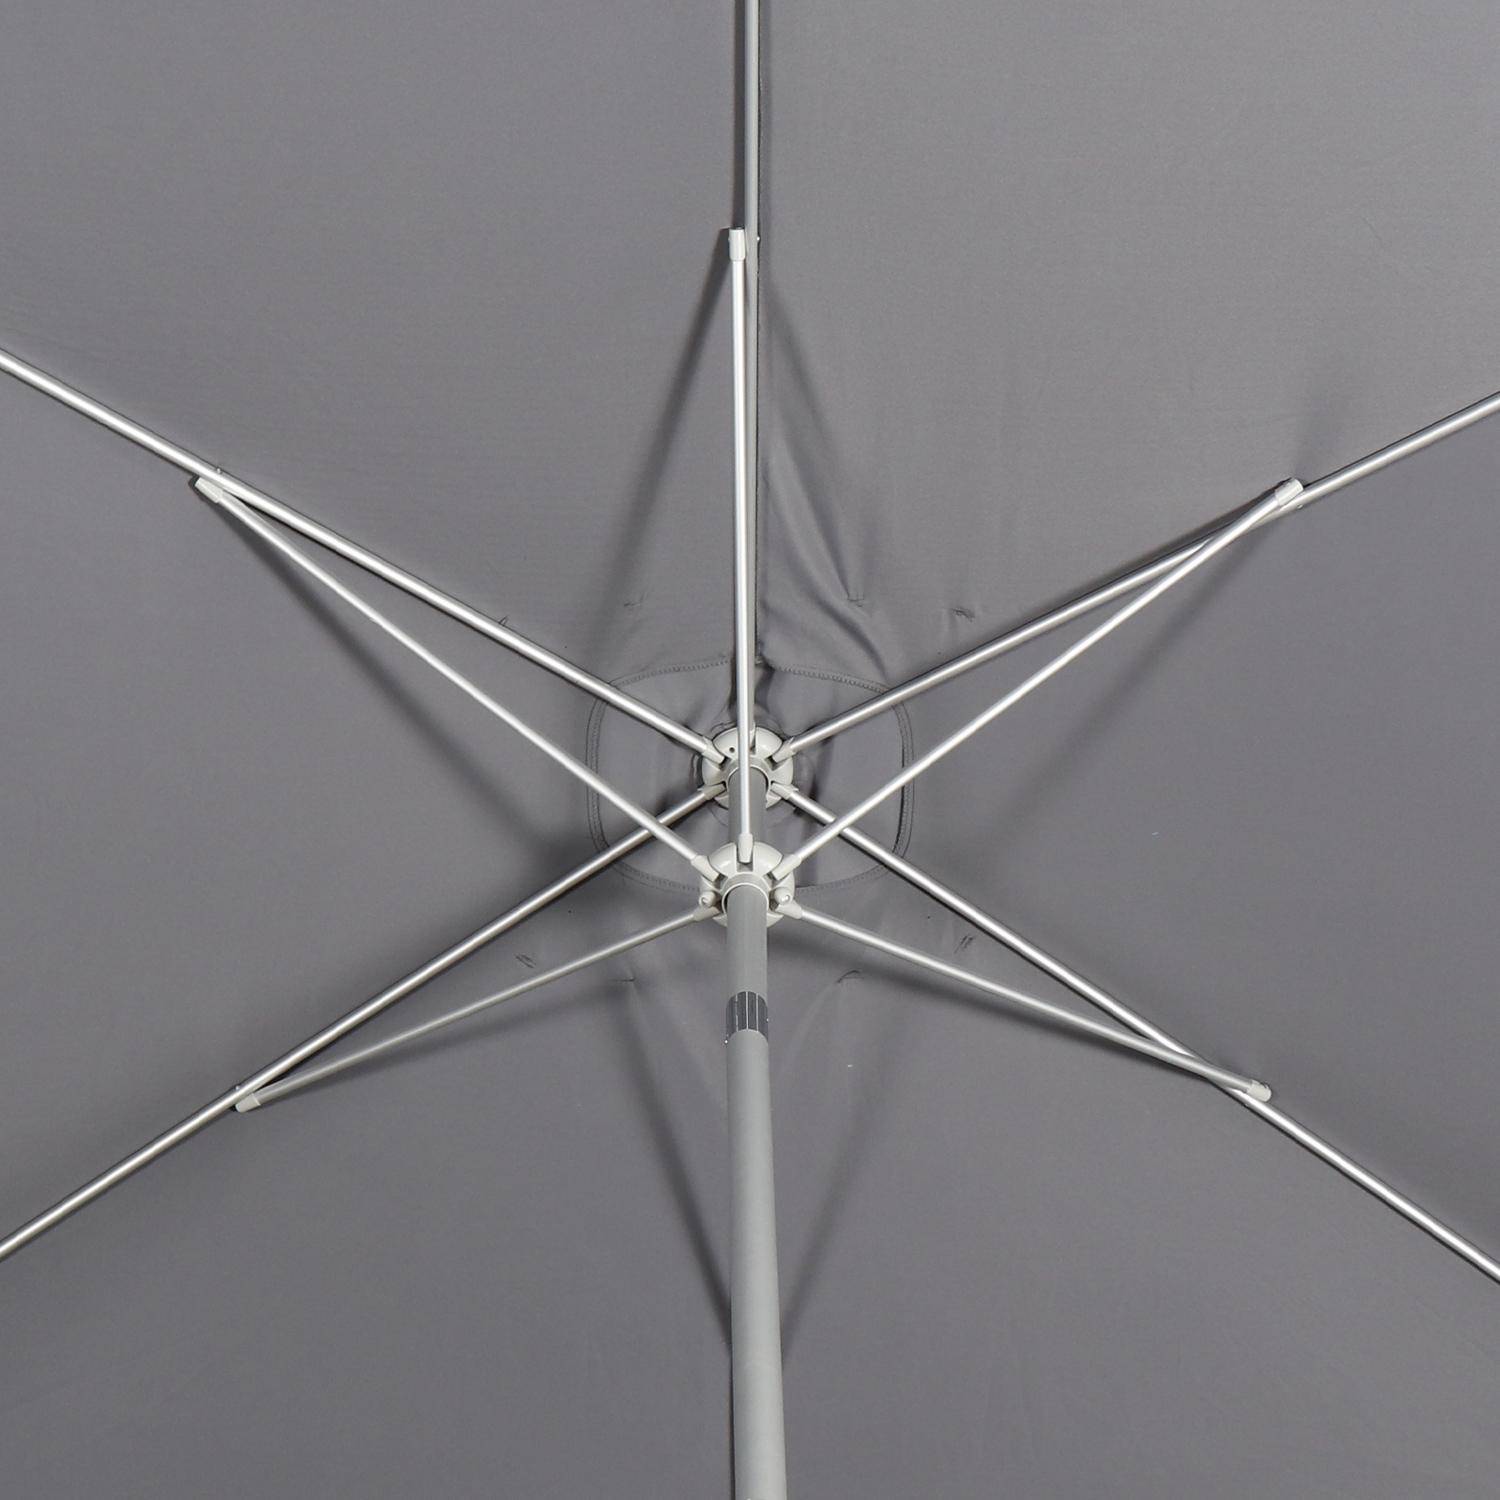 Stokparasol Wissant, 2x3m, grijs, geanodiseerd aluminium, openingshendel , 2x3m, grijs Photo8